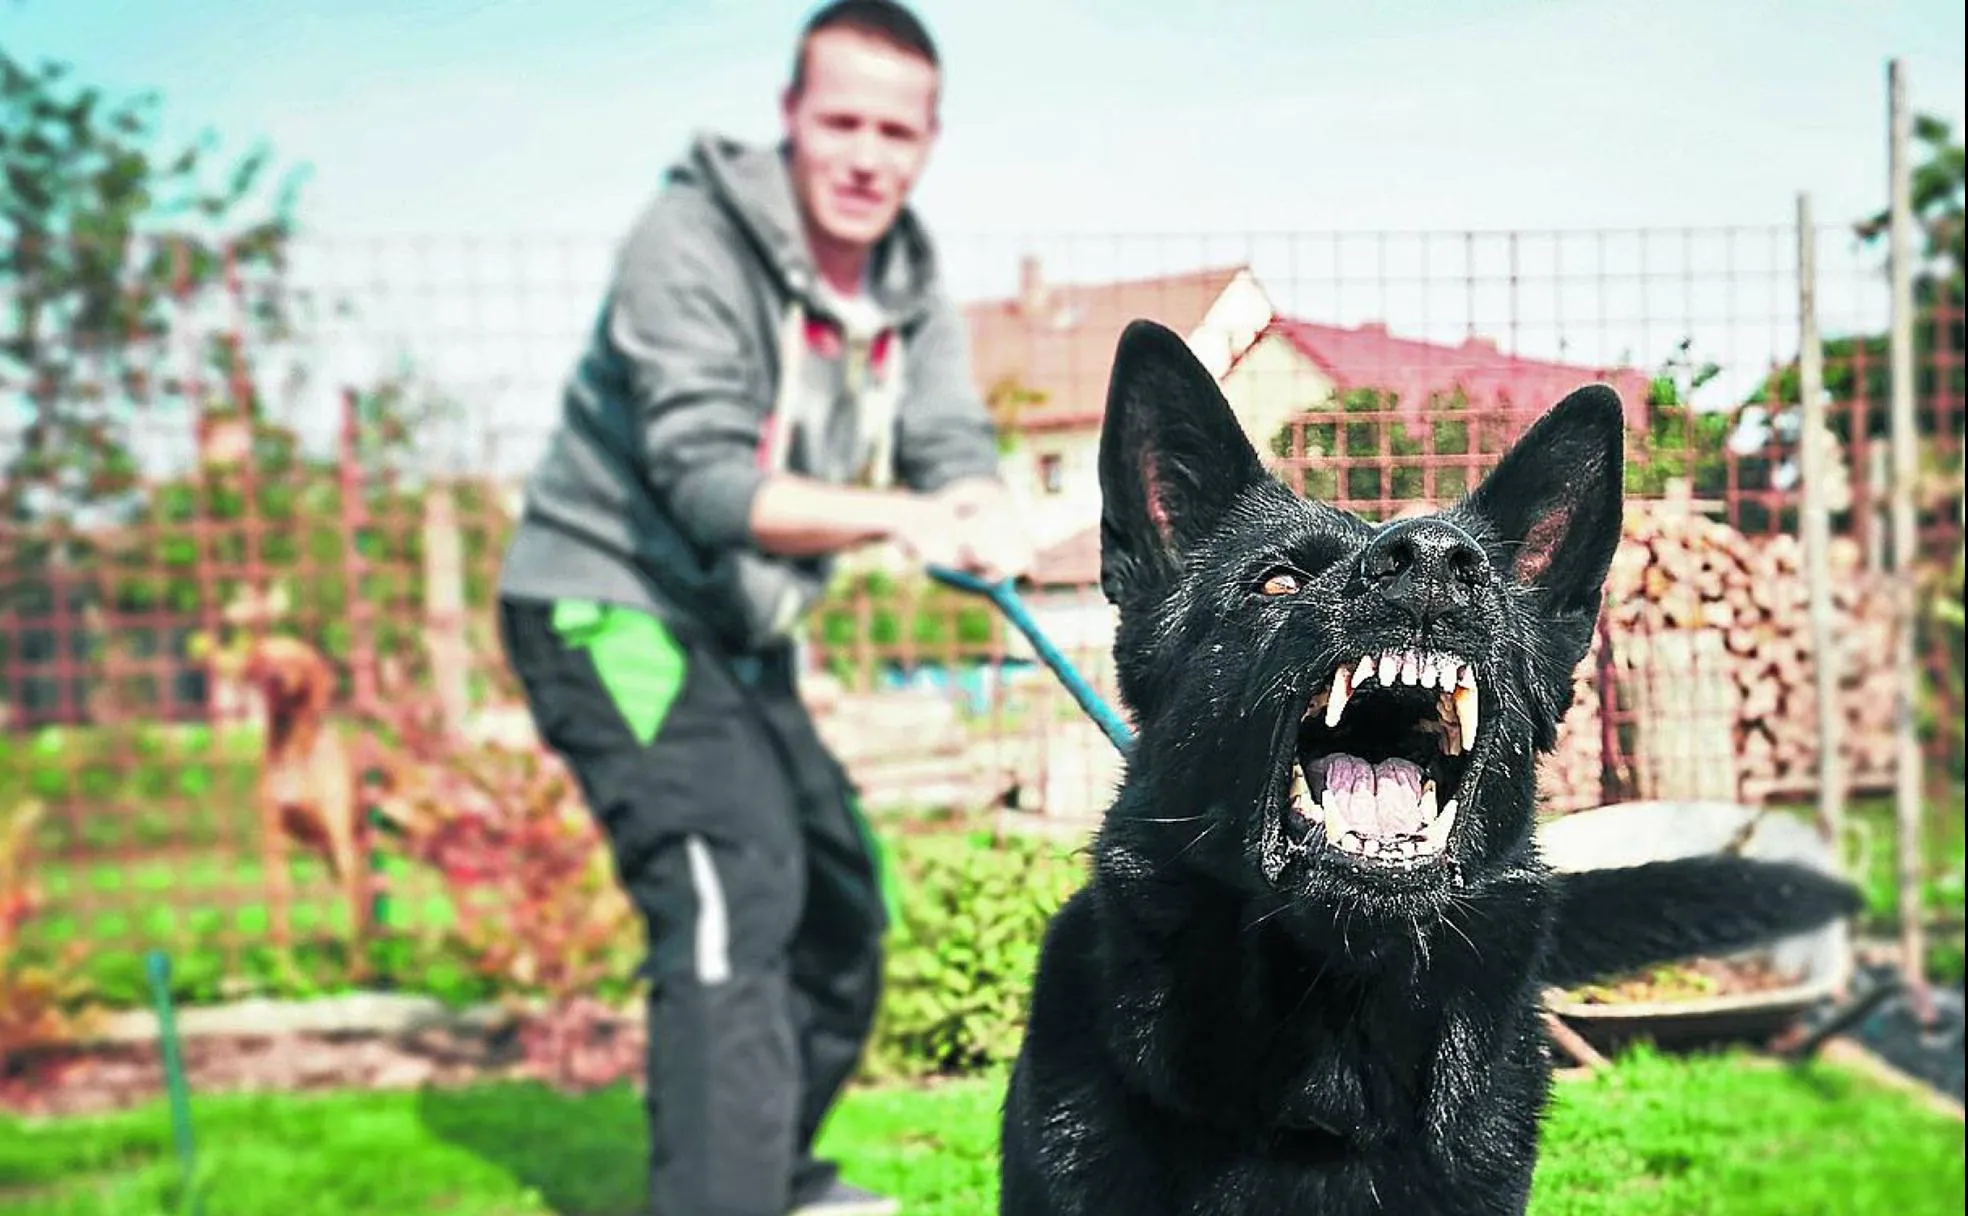 A la izquierda, un perro incluidos en la lista de los potencialmente peligrosos recibe sumiso las muestras de cariño de su dueña. En esta página, un joven azuza a su perro en el jardín de su casa, y un pitbull intervenido por la Policía encerrado entre rejas.